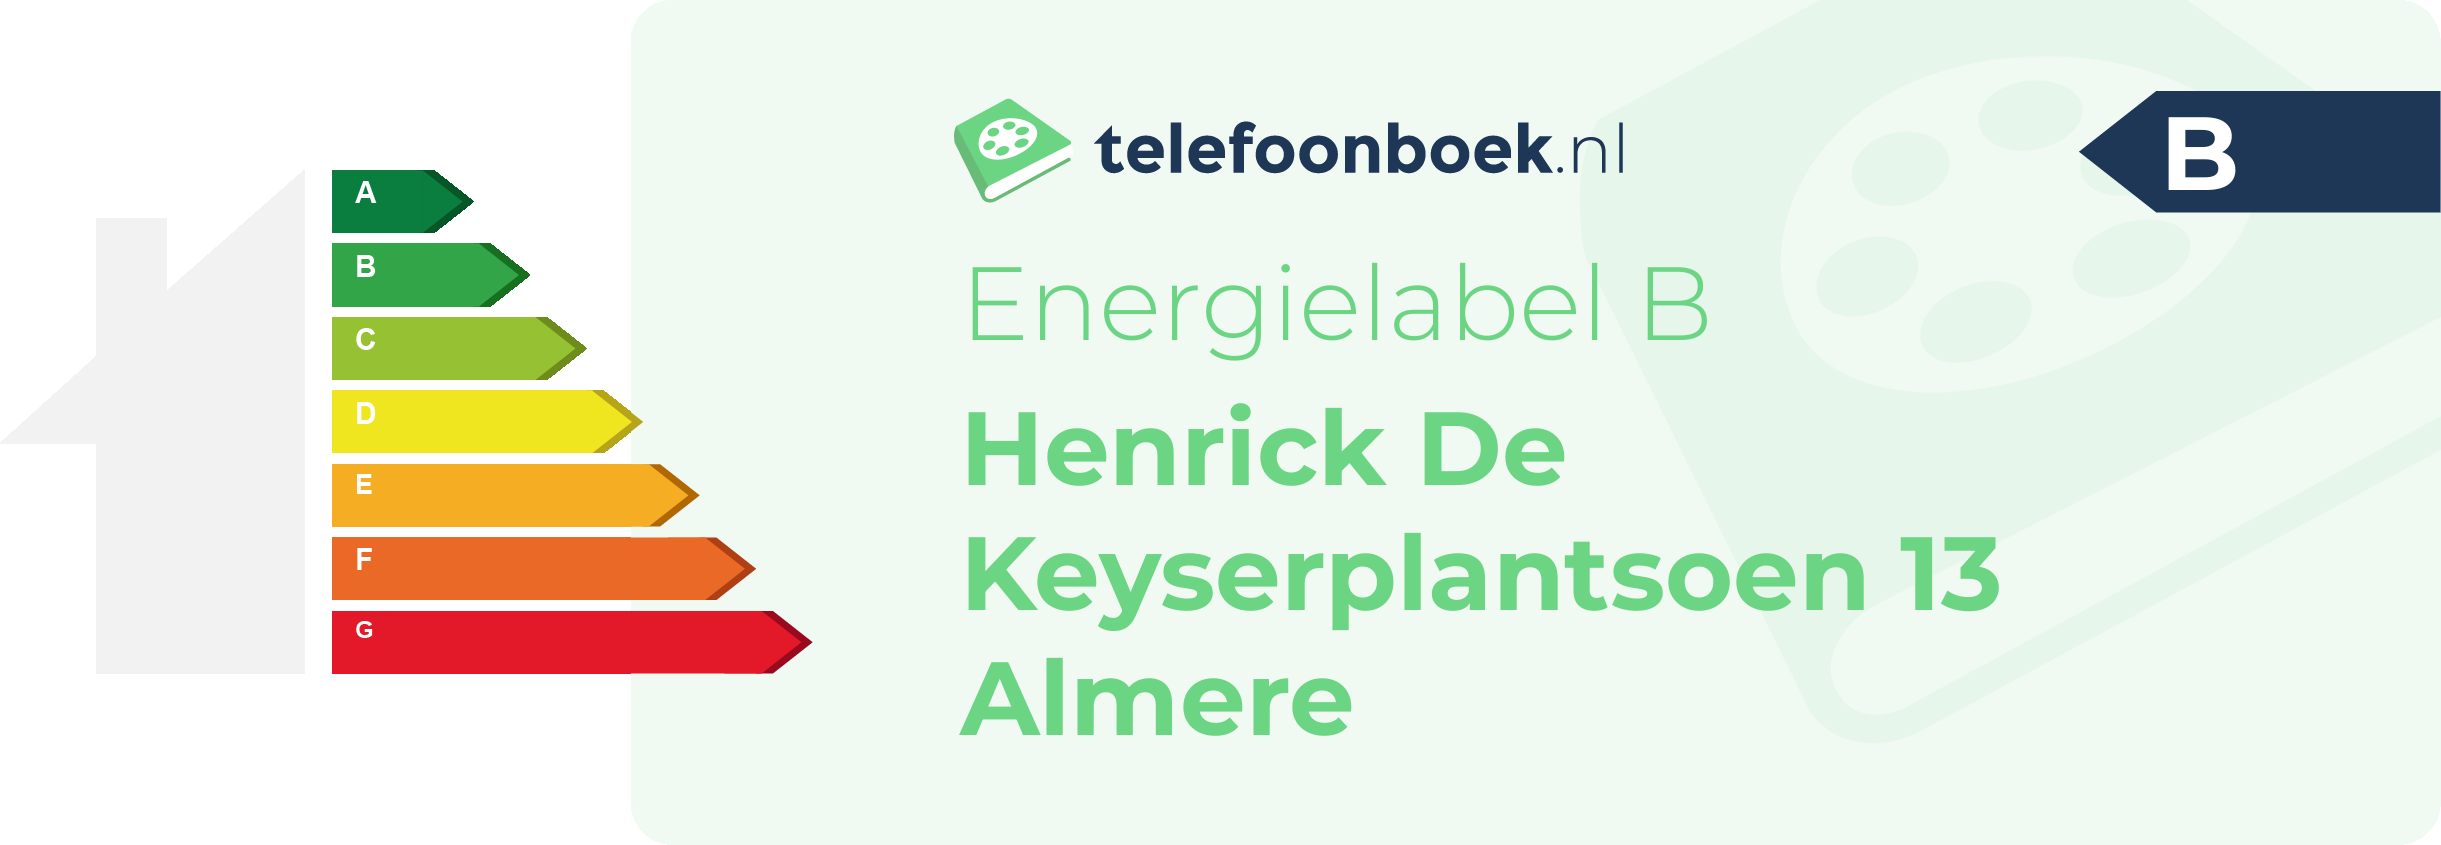 Energielabel Henrick De Keyserplantsoen 13 Almere